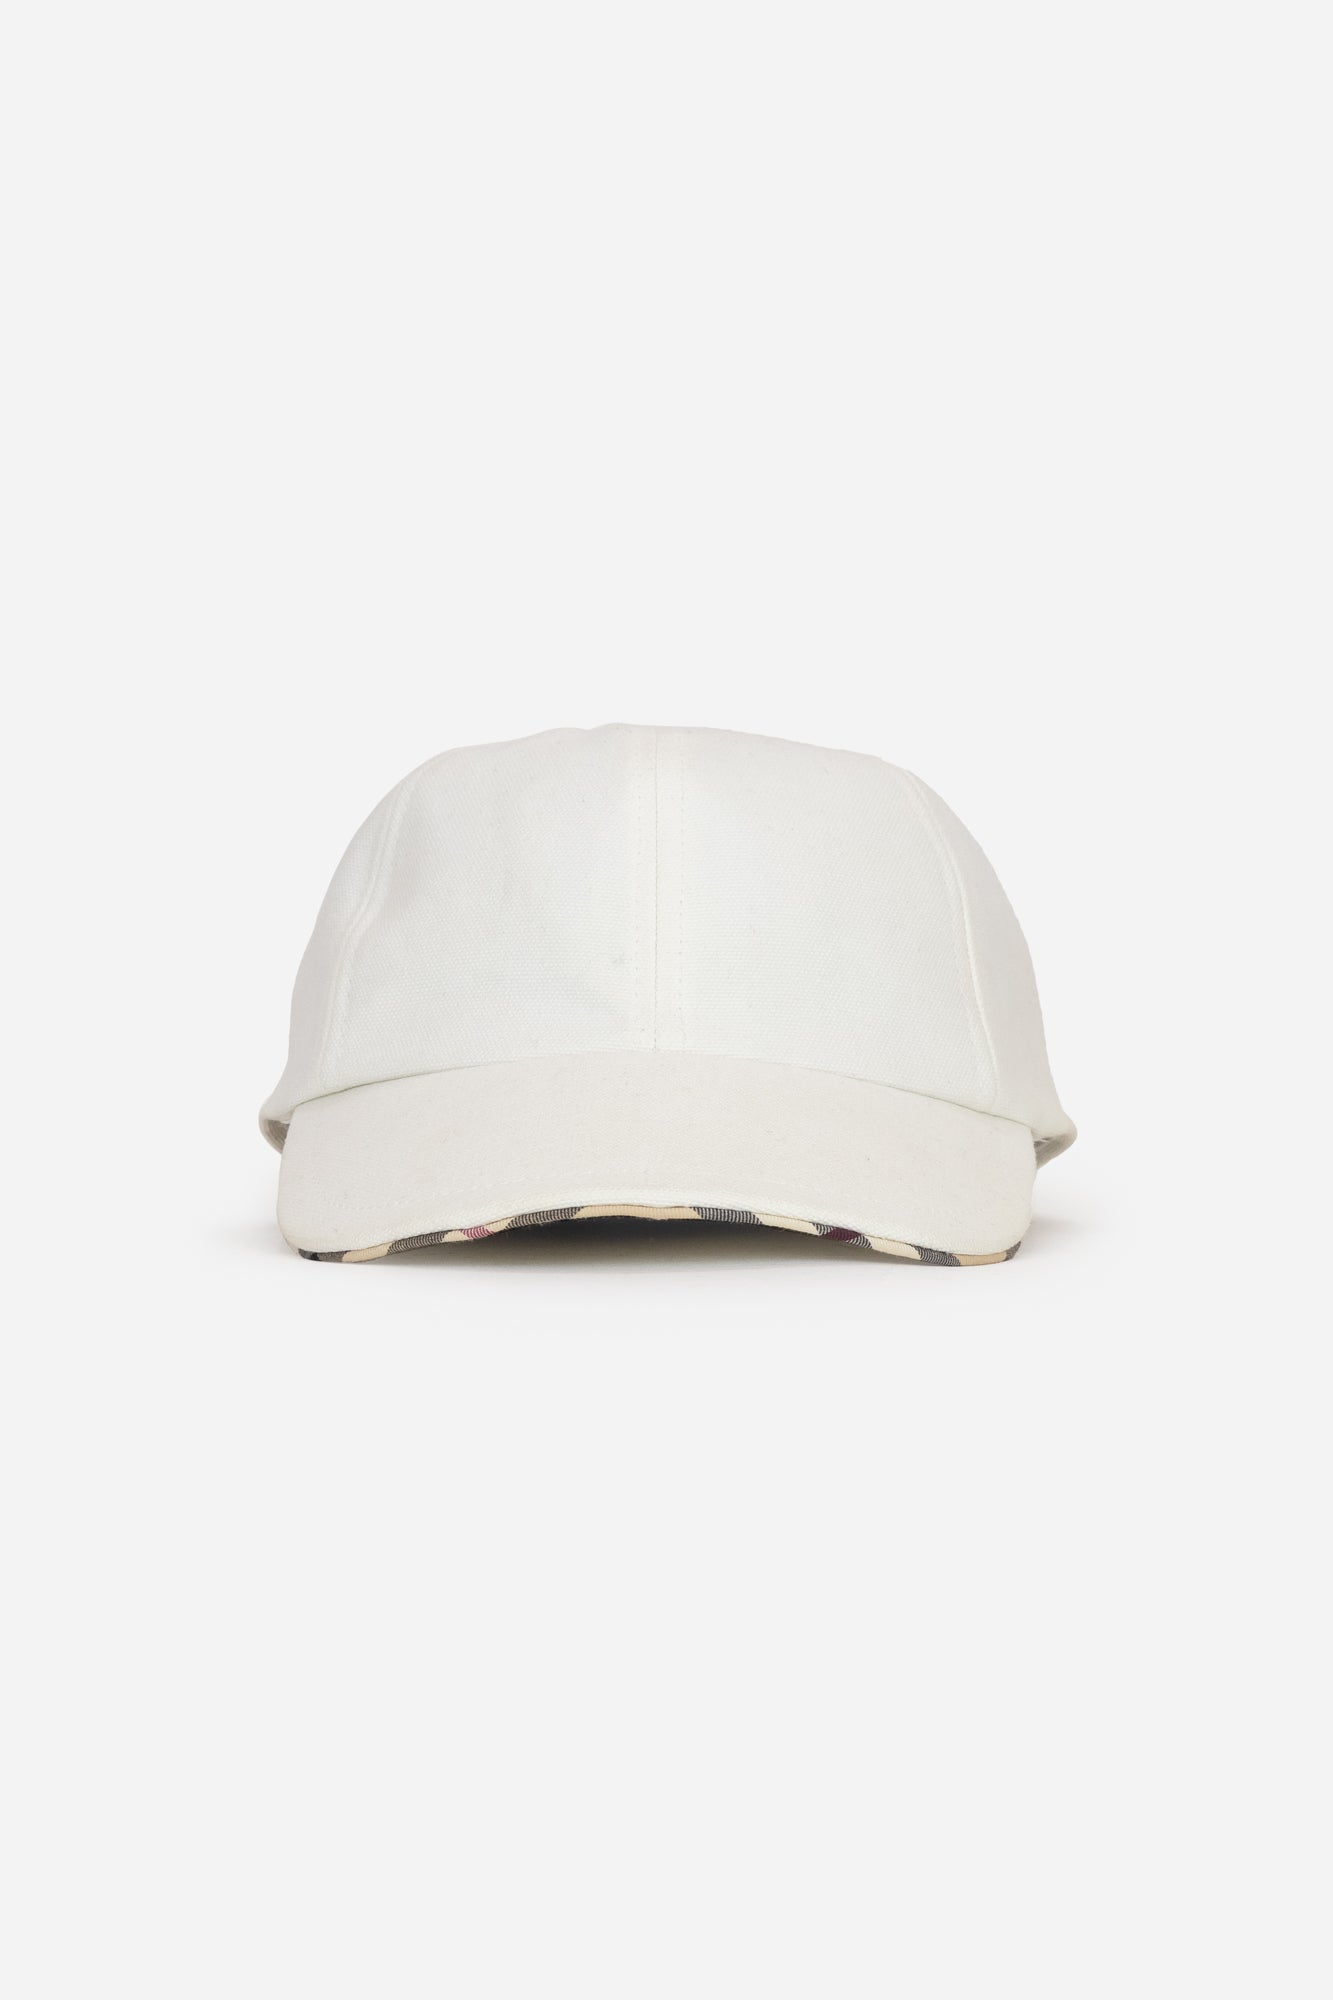 White Ball Cap With Plaid Brim